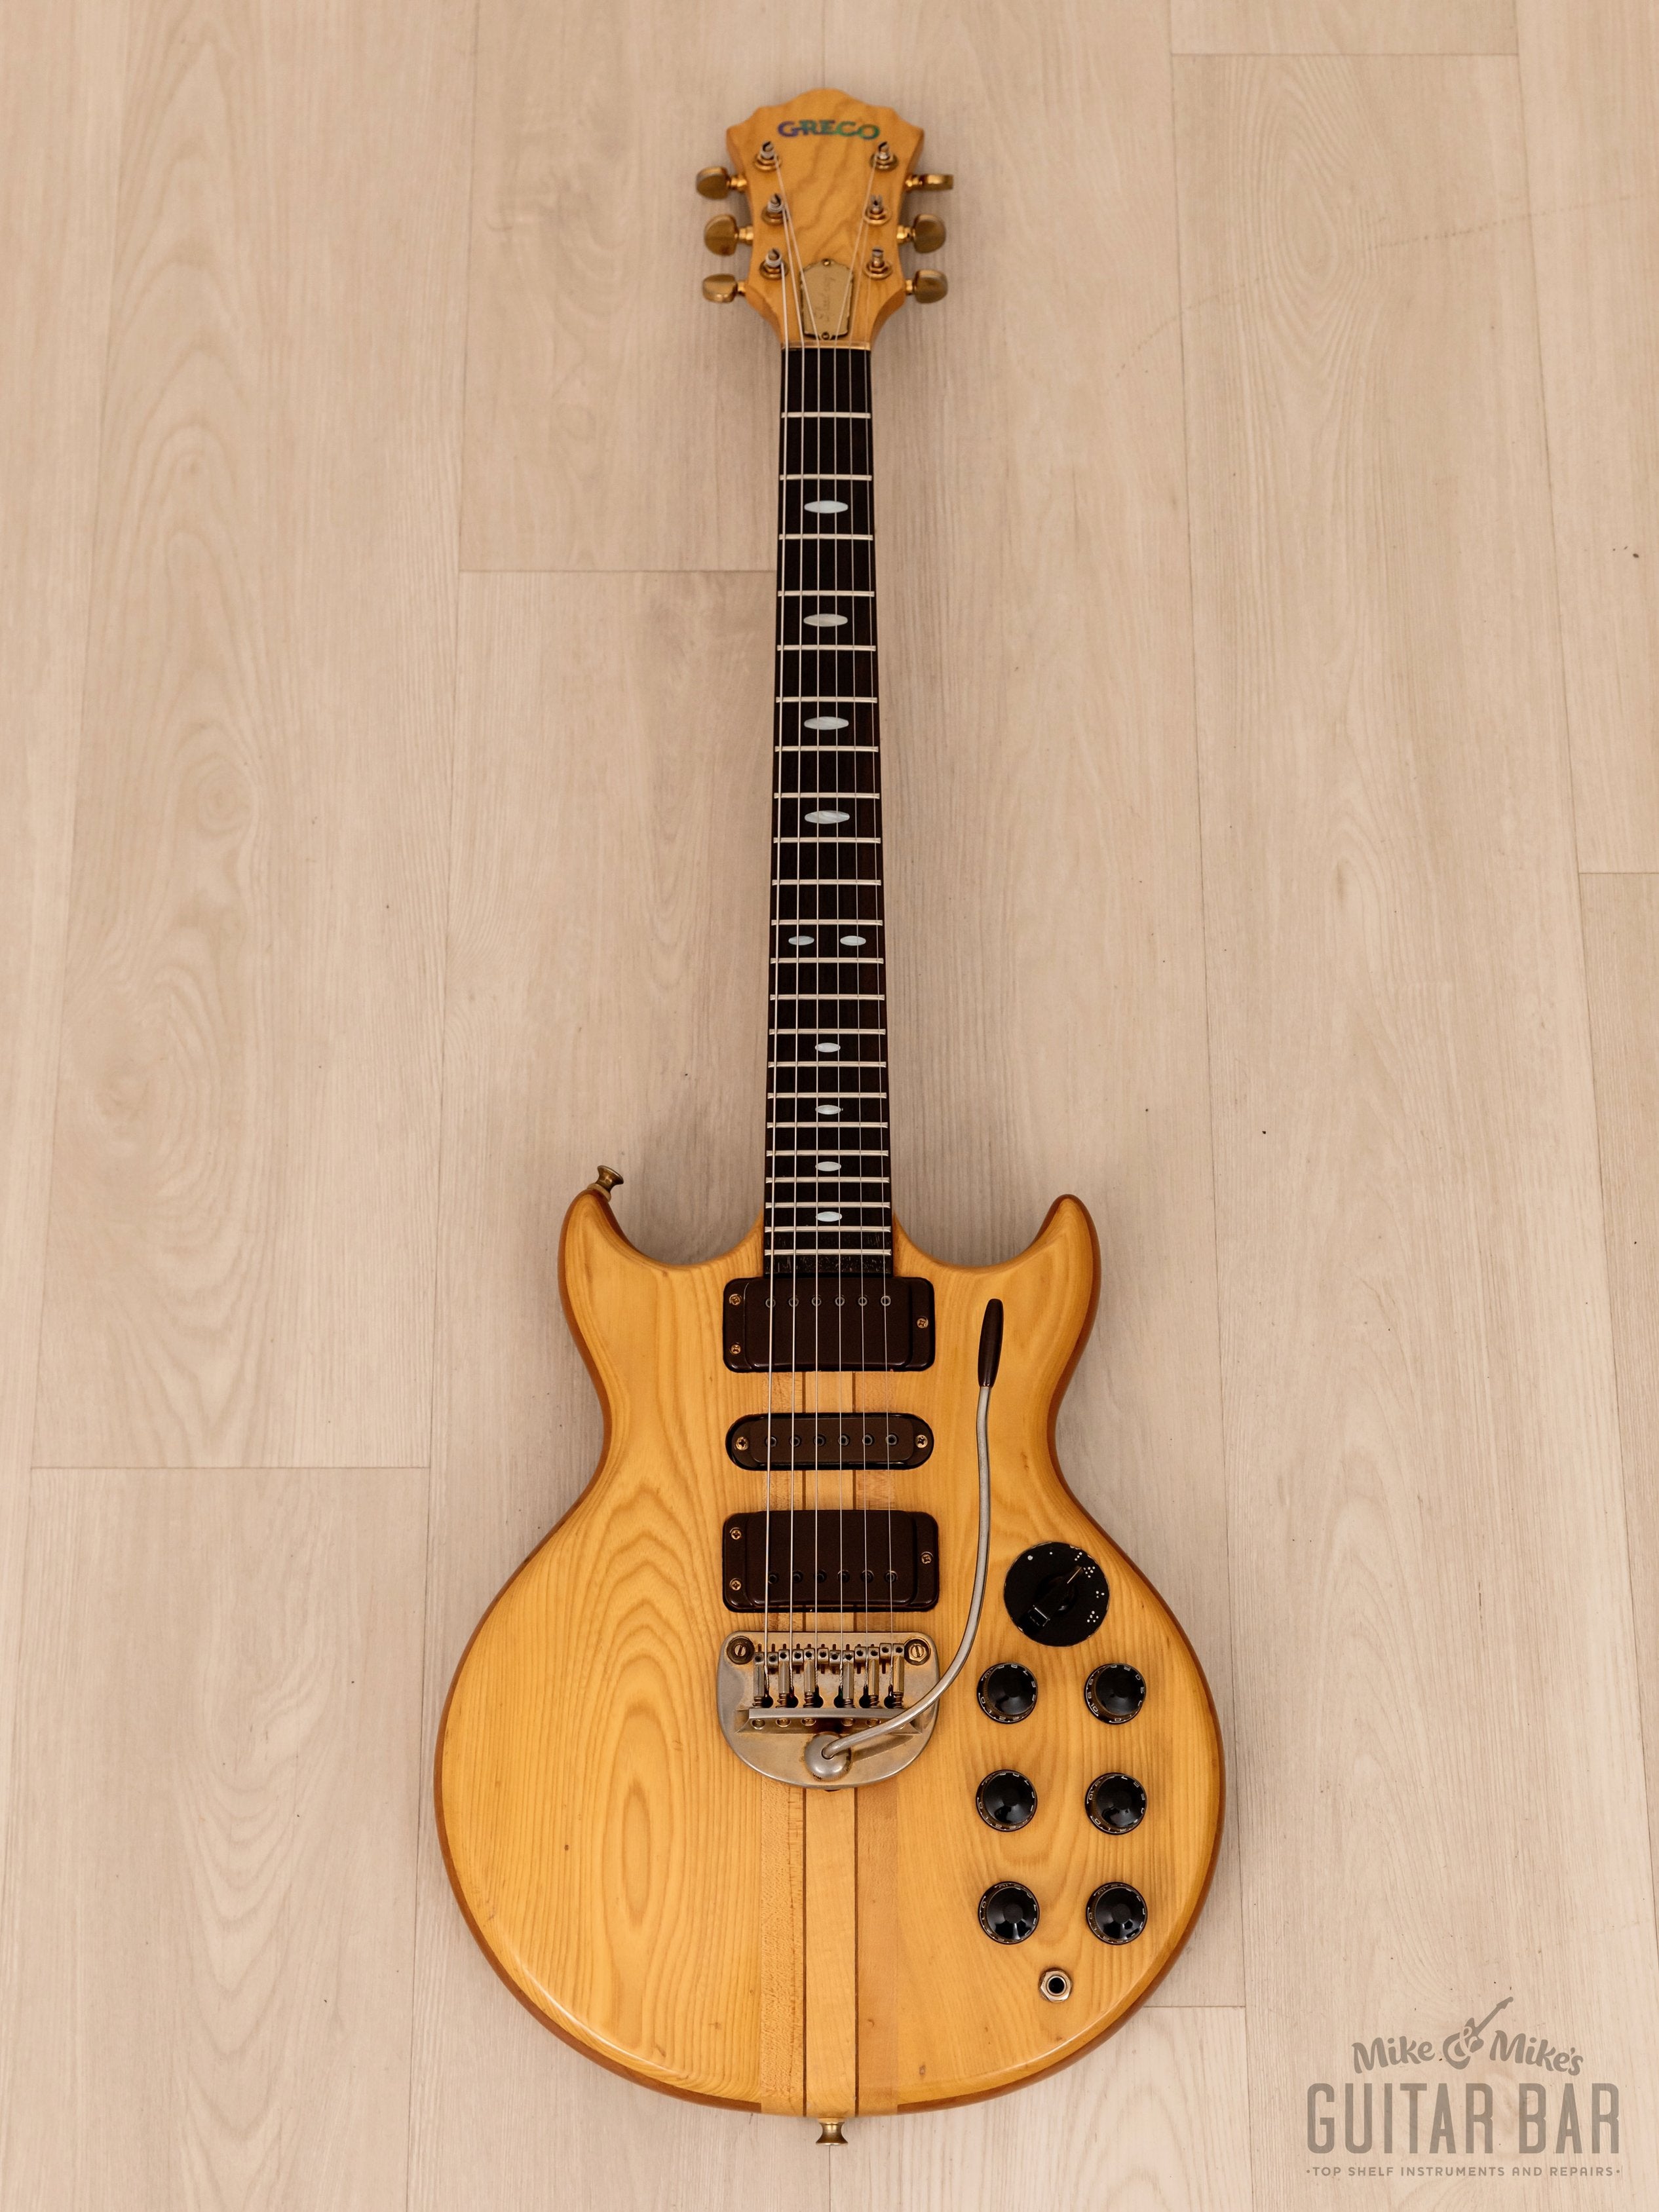 1979 Greco GO-III 1300 Speed Way Neck Through Vintage Guitar w/ Case, Japan Fujigen